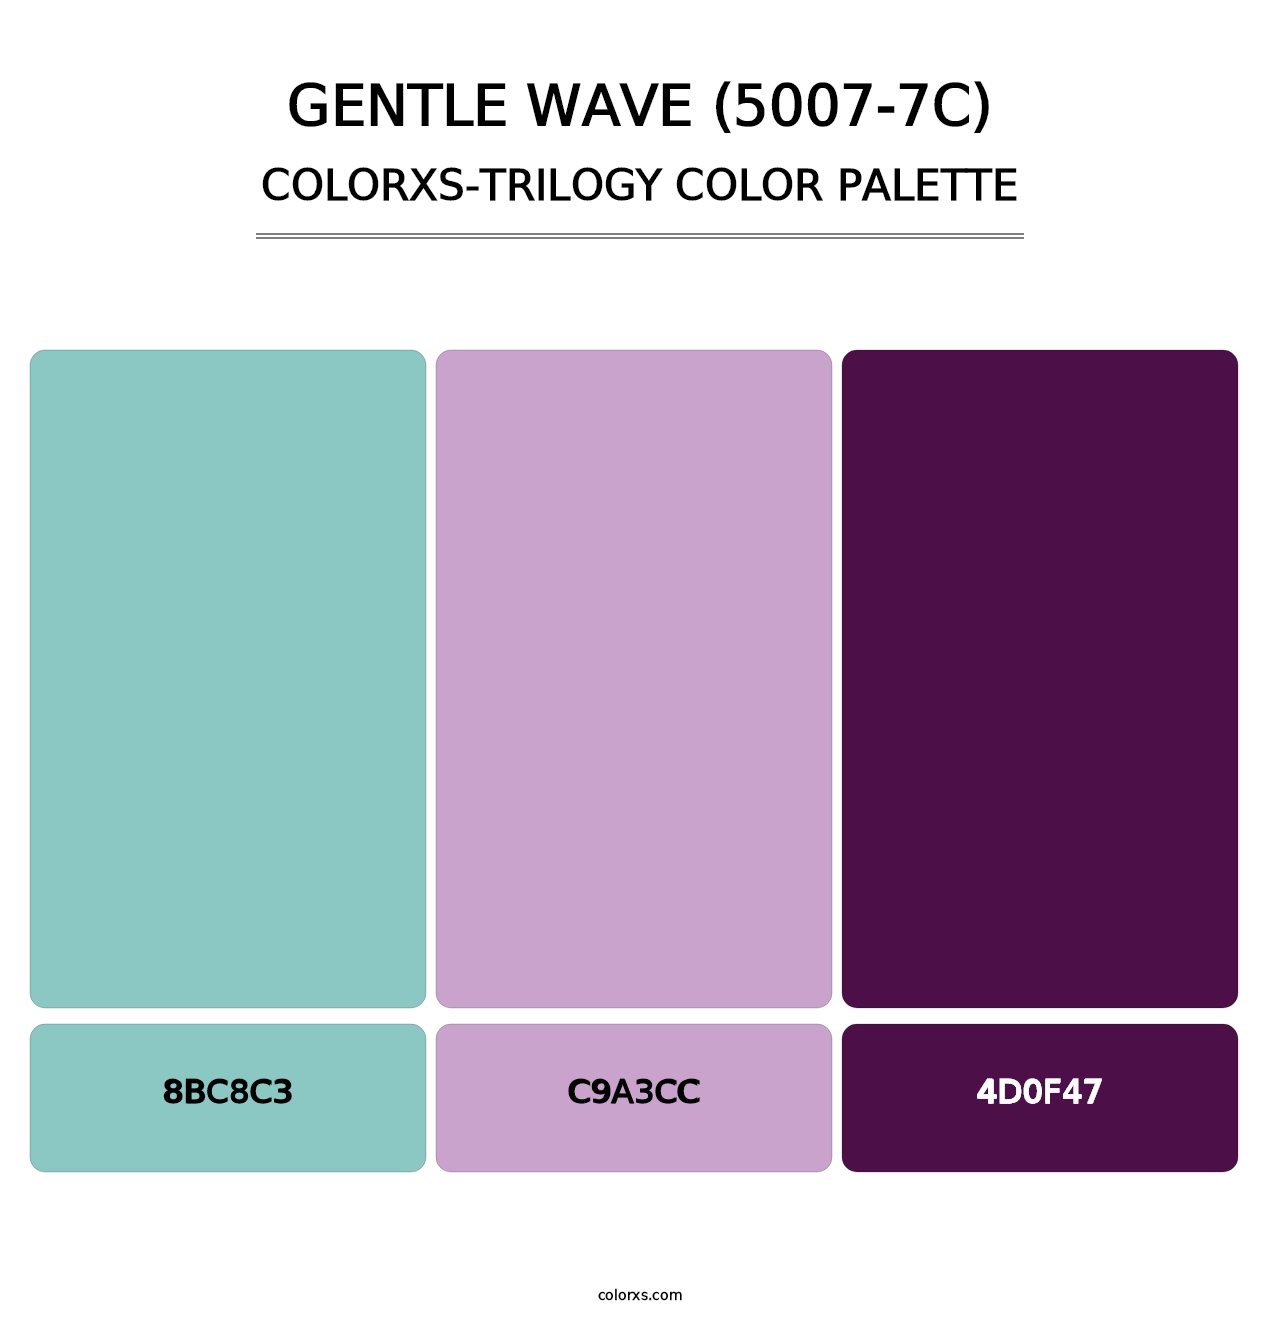 Gentle Wave (5007-7C) - Colorxs Trilogy Palette